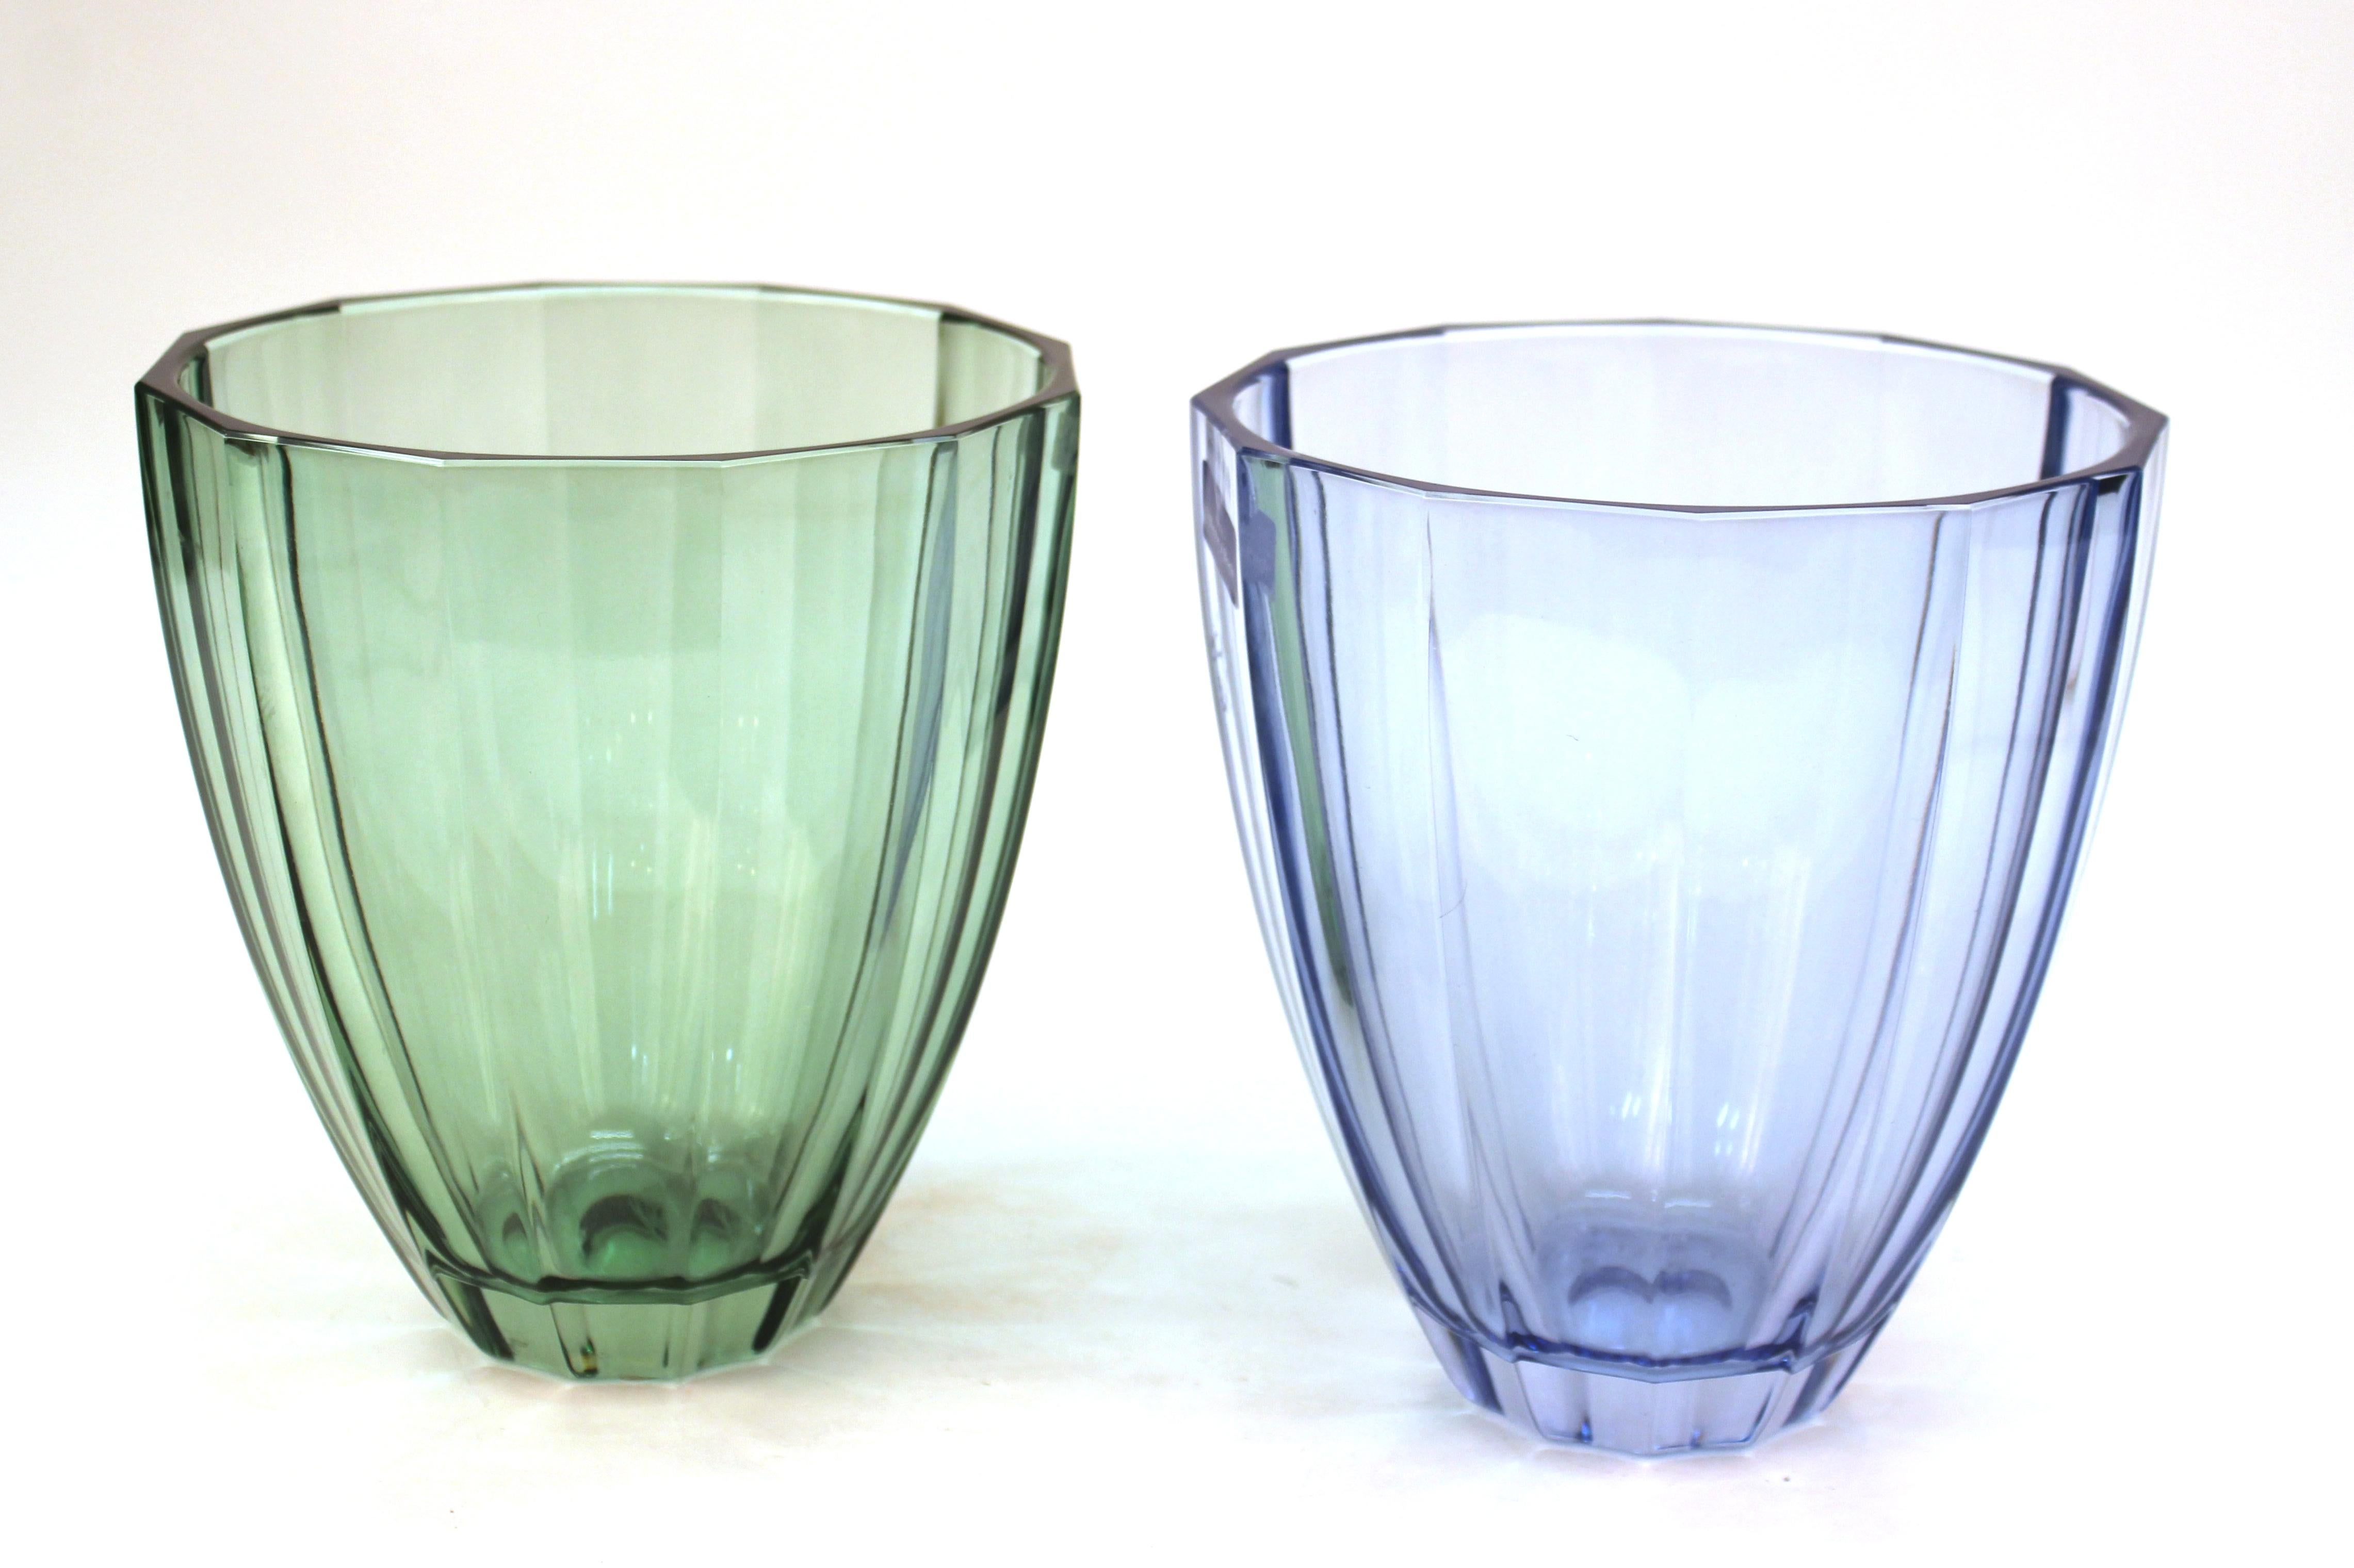 Villeroy & Boch Paar dekorative Vasen im modernen Stil aus blauem und grünem Glas. Das Paar ist in gutem Zustand, mit altersgemäßen Abnutzungserscheinungen an den Unterseiten.